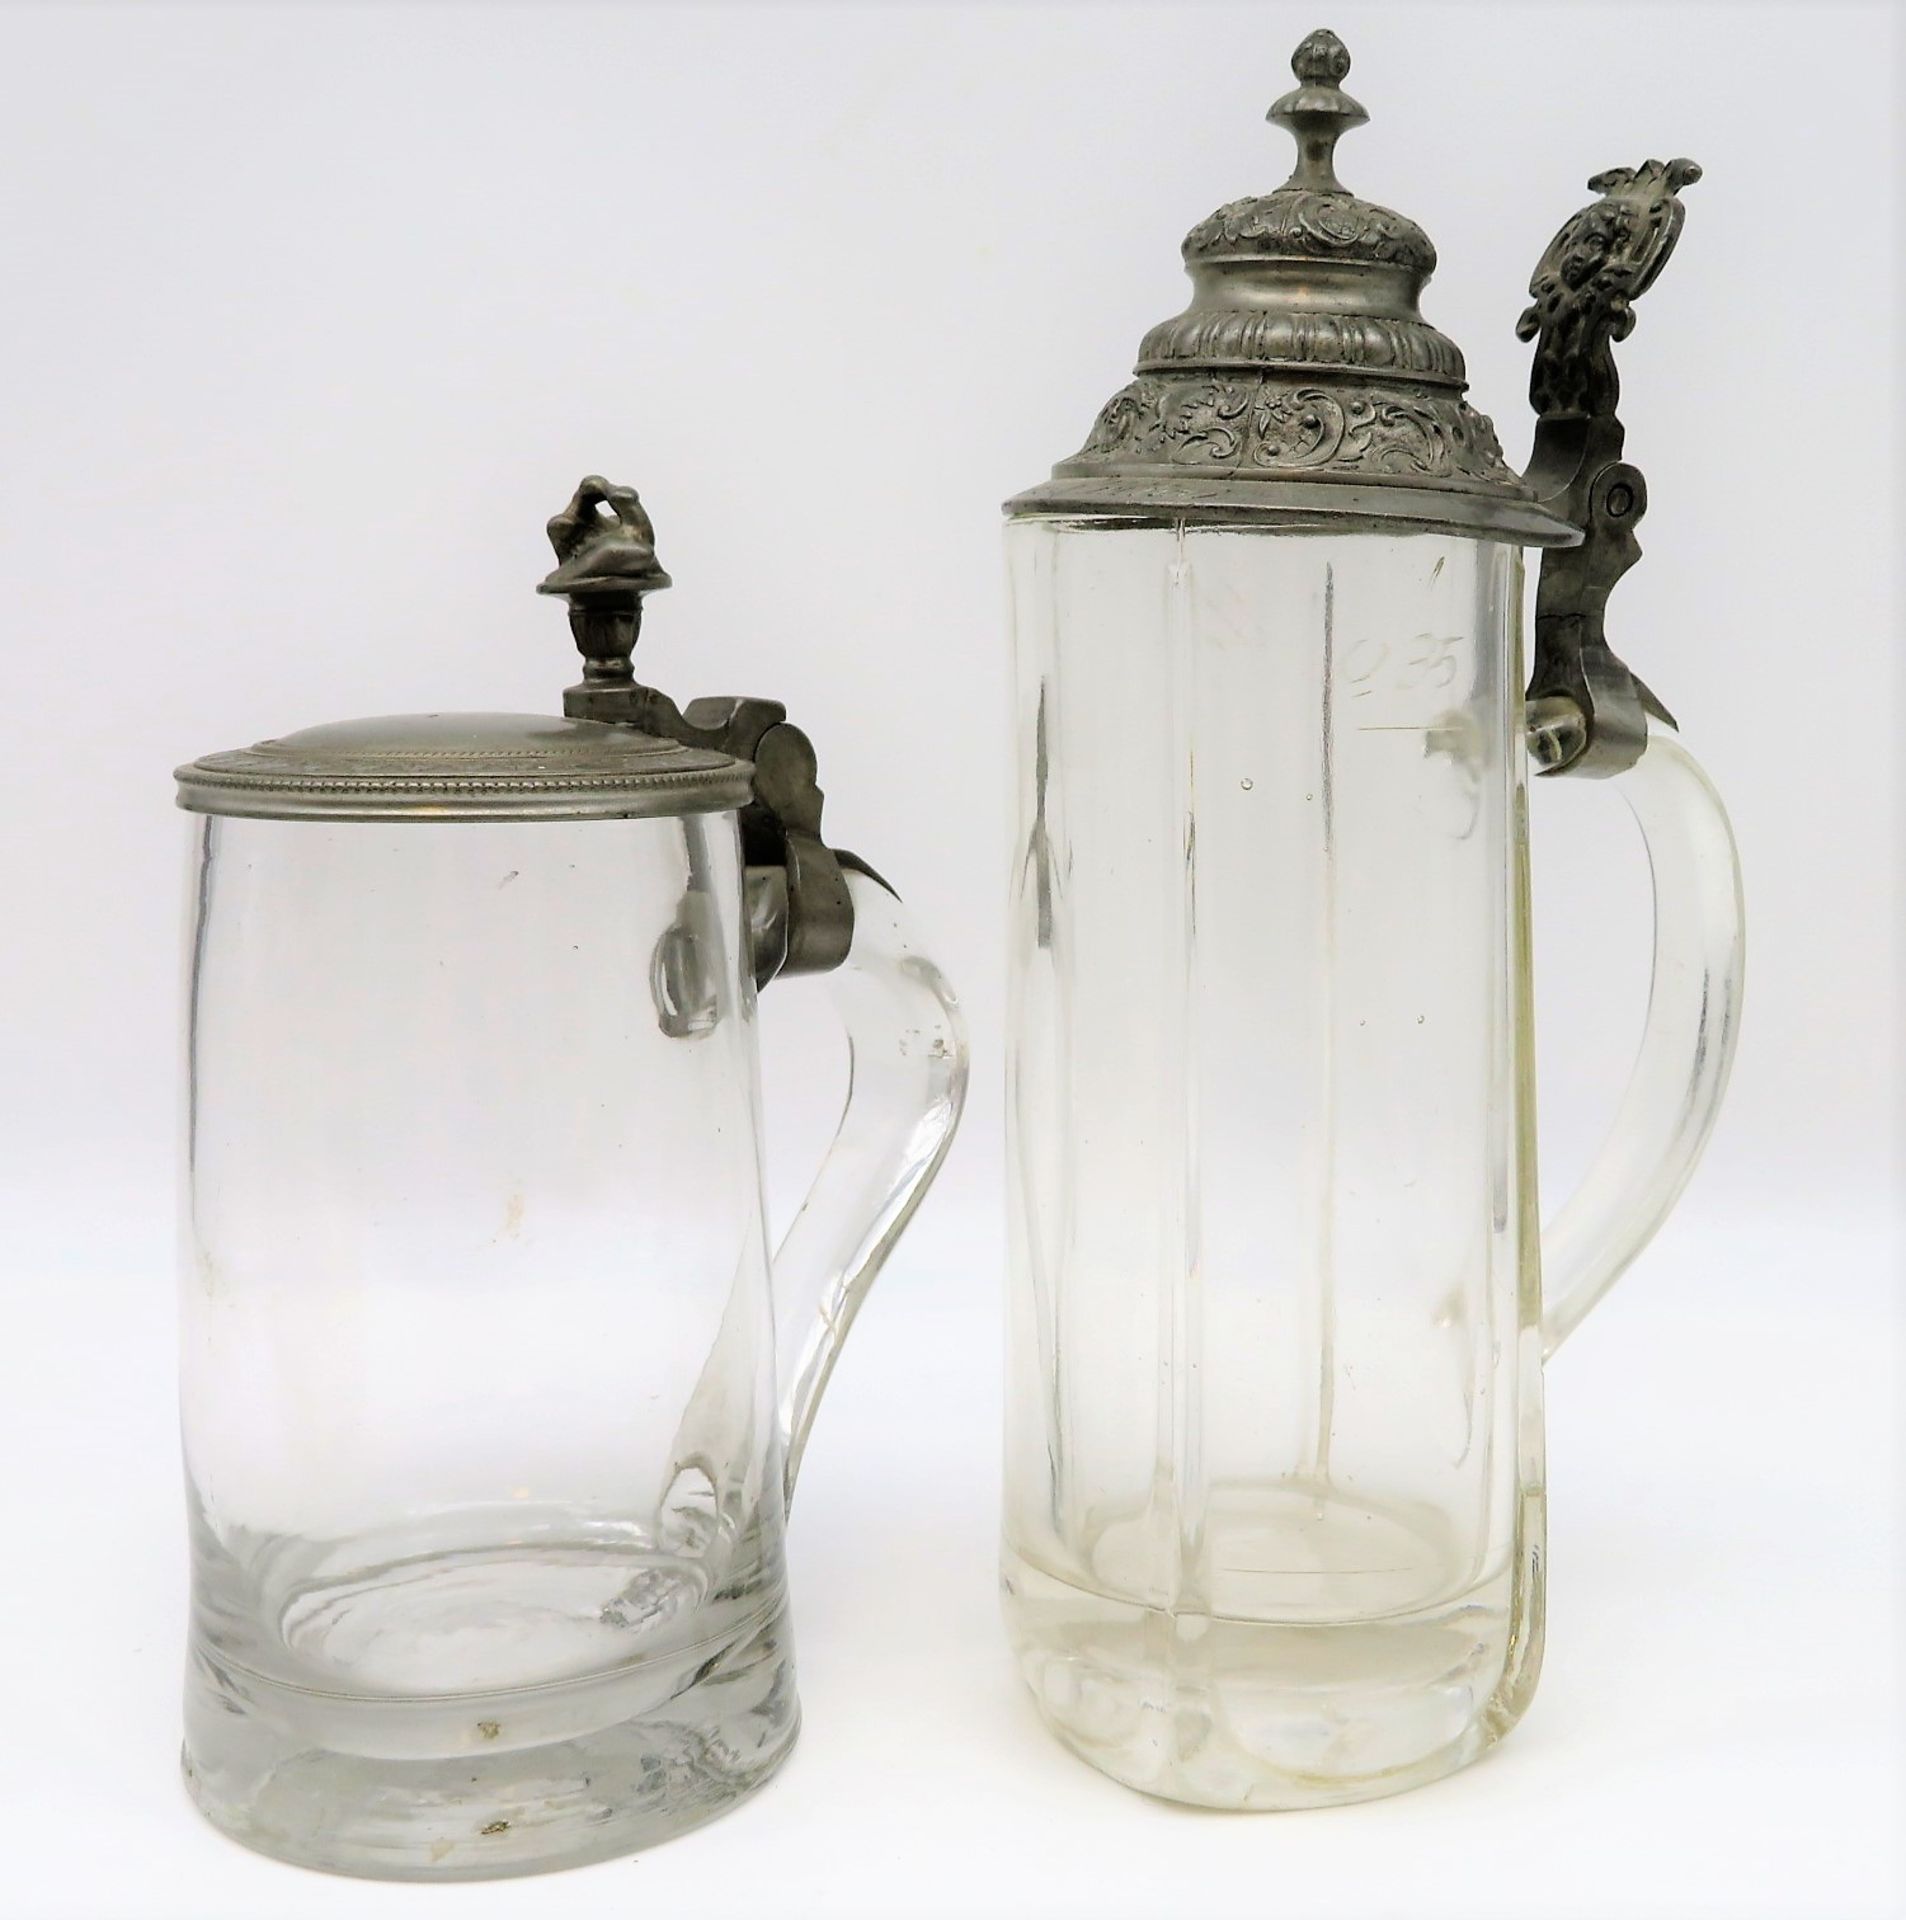 2 Bierkrüge, 19. Jahrhundert, farbloses Glas, Zinndeckel, h 18/23 cm.